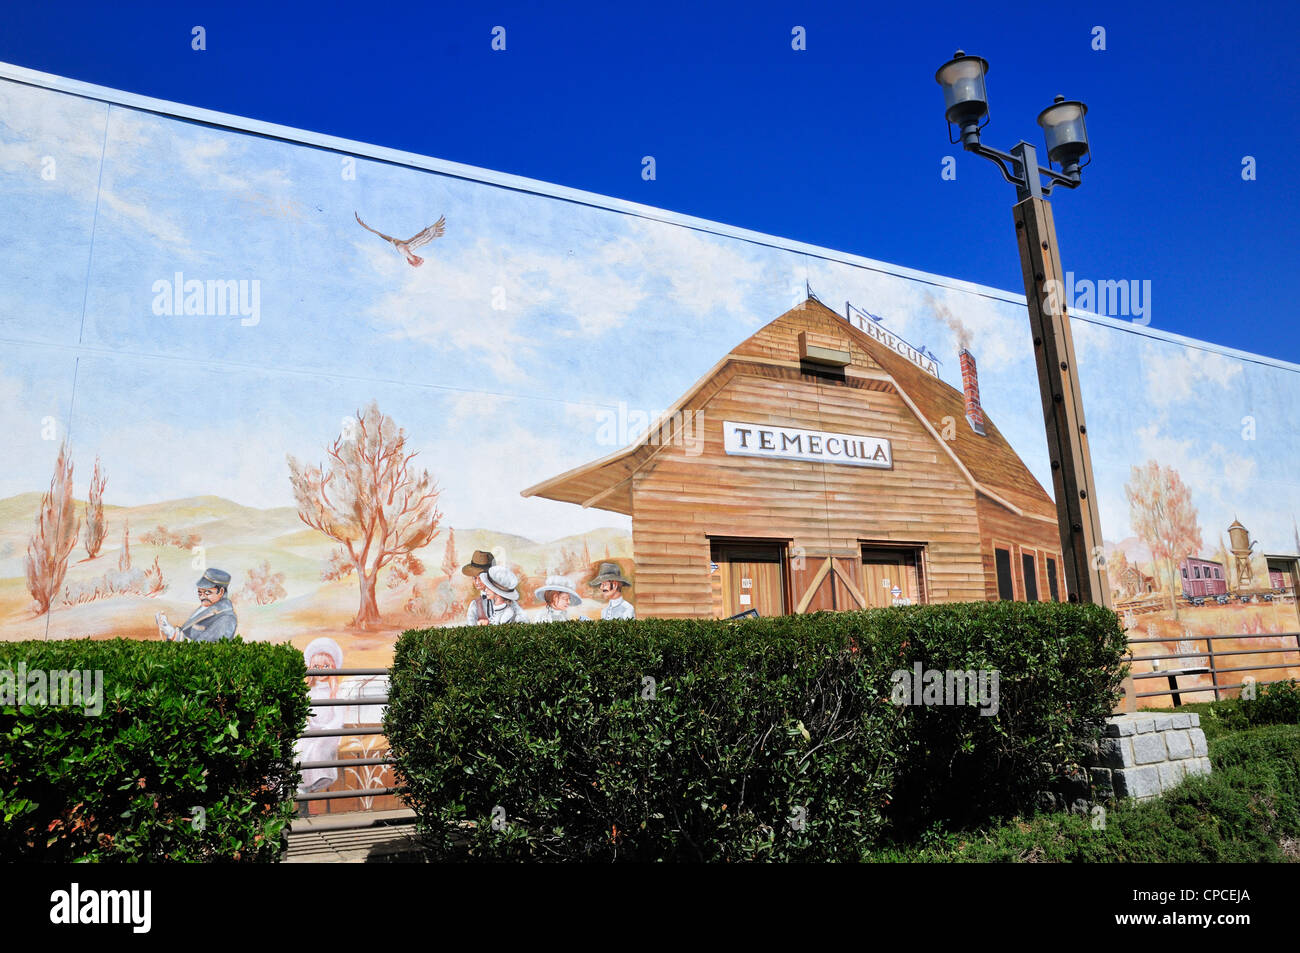 Partie d'une fresque géante sur le côté d'un immeuble en Tmecula vieille ville, en Californie Banque D'Images